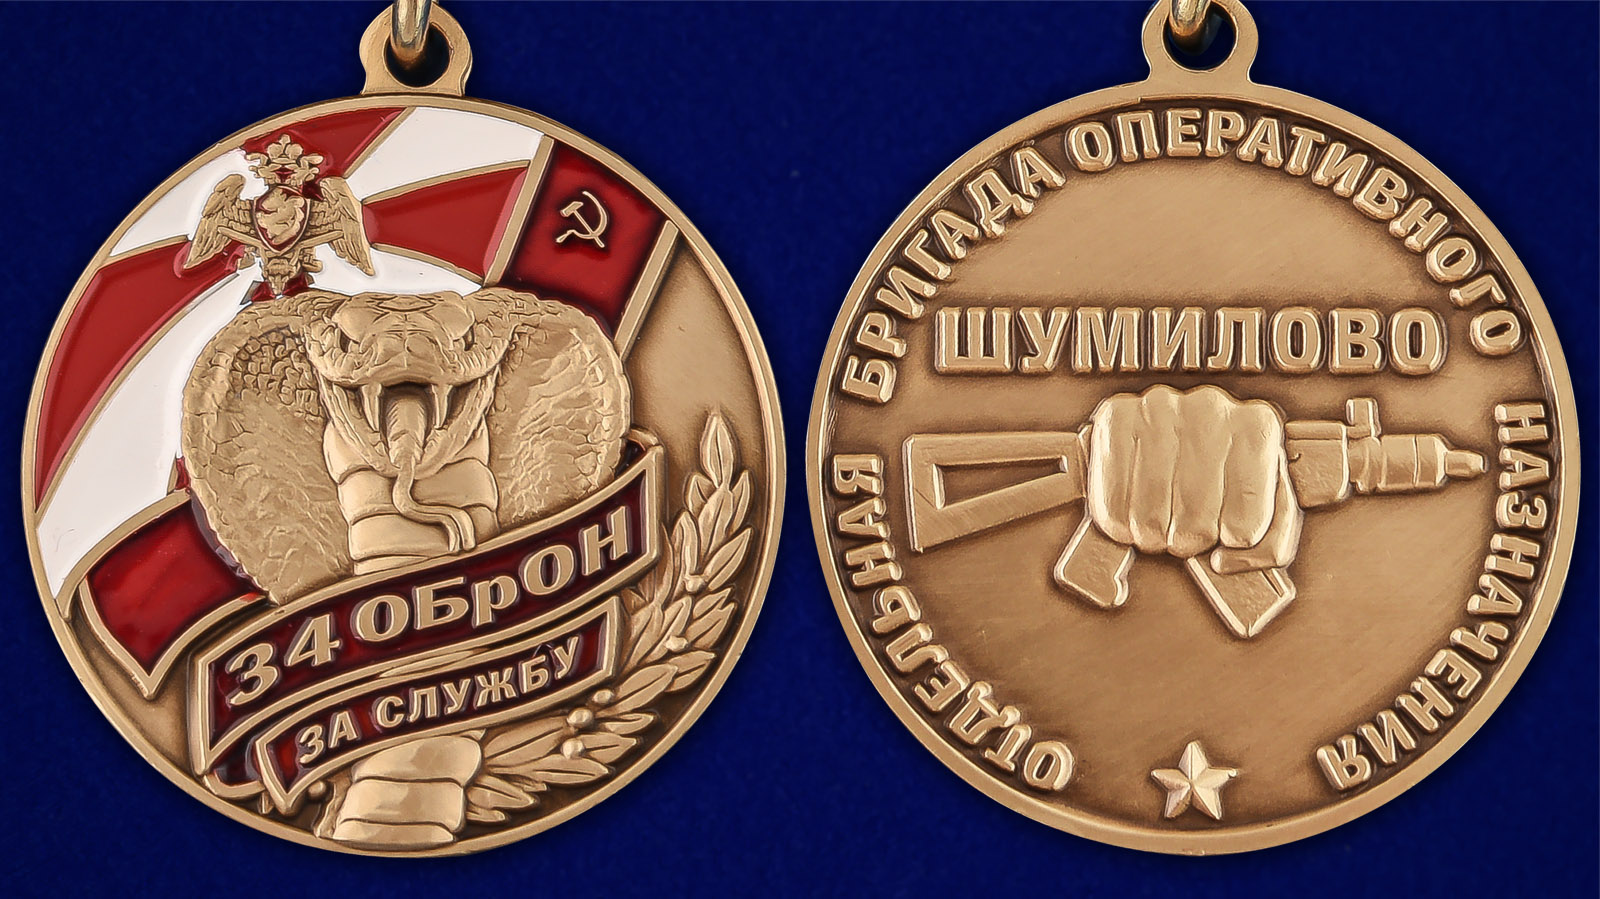 Медаль "За службу в 34 ОБрОН" - аверс и реверс